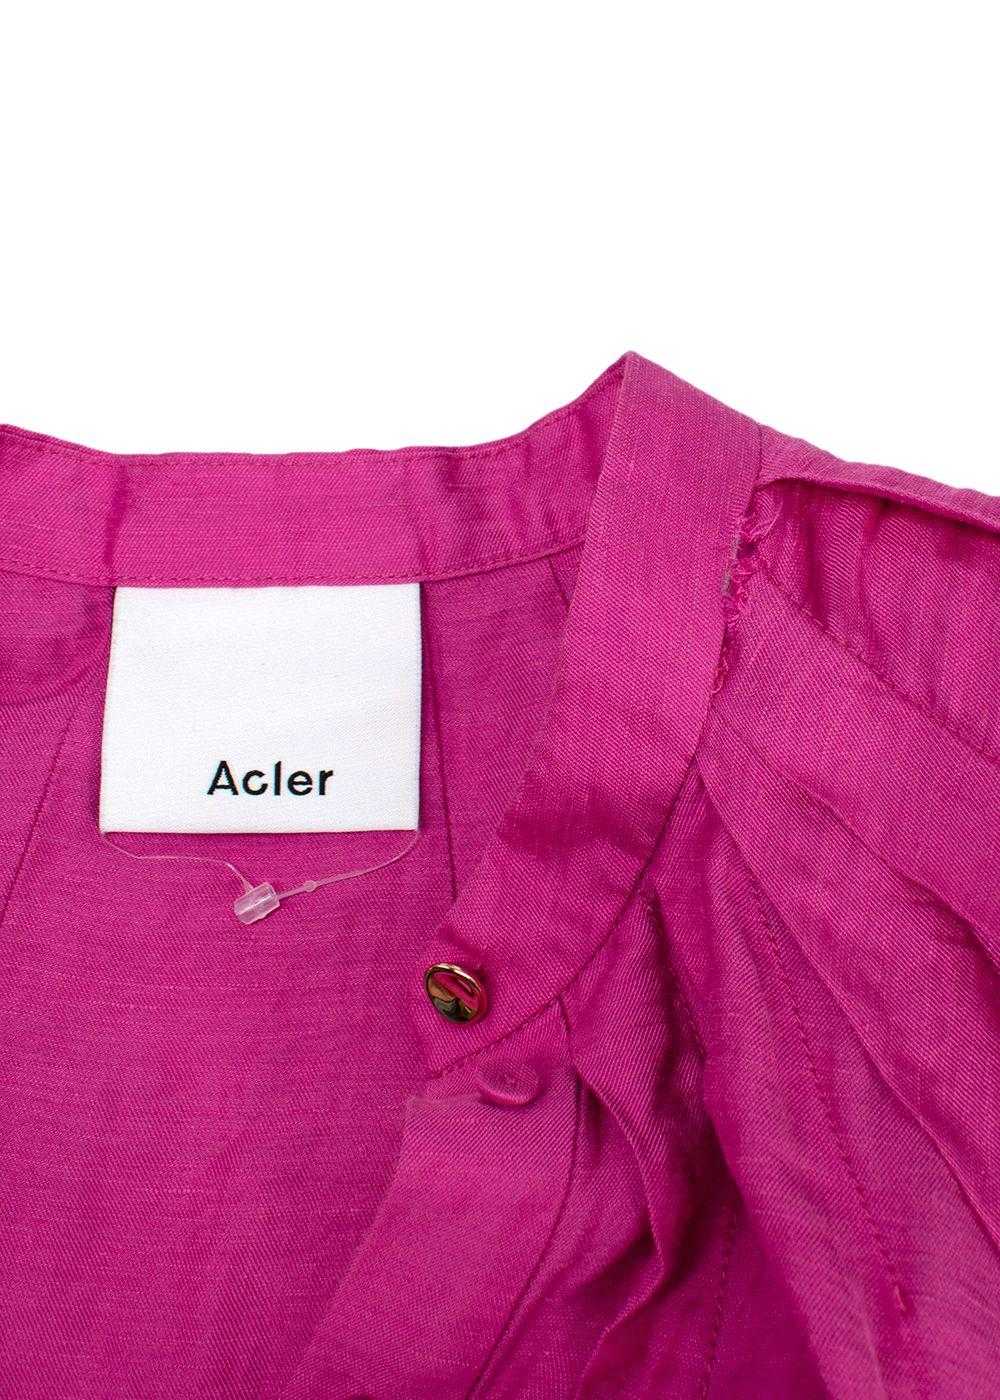 Acler Acler Linen-Blend Cranhurst Midi Dress - image 8